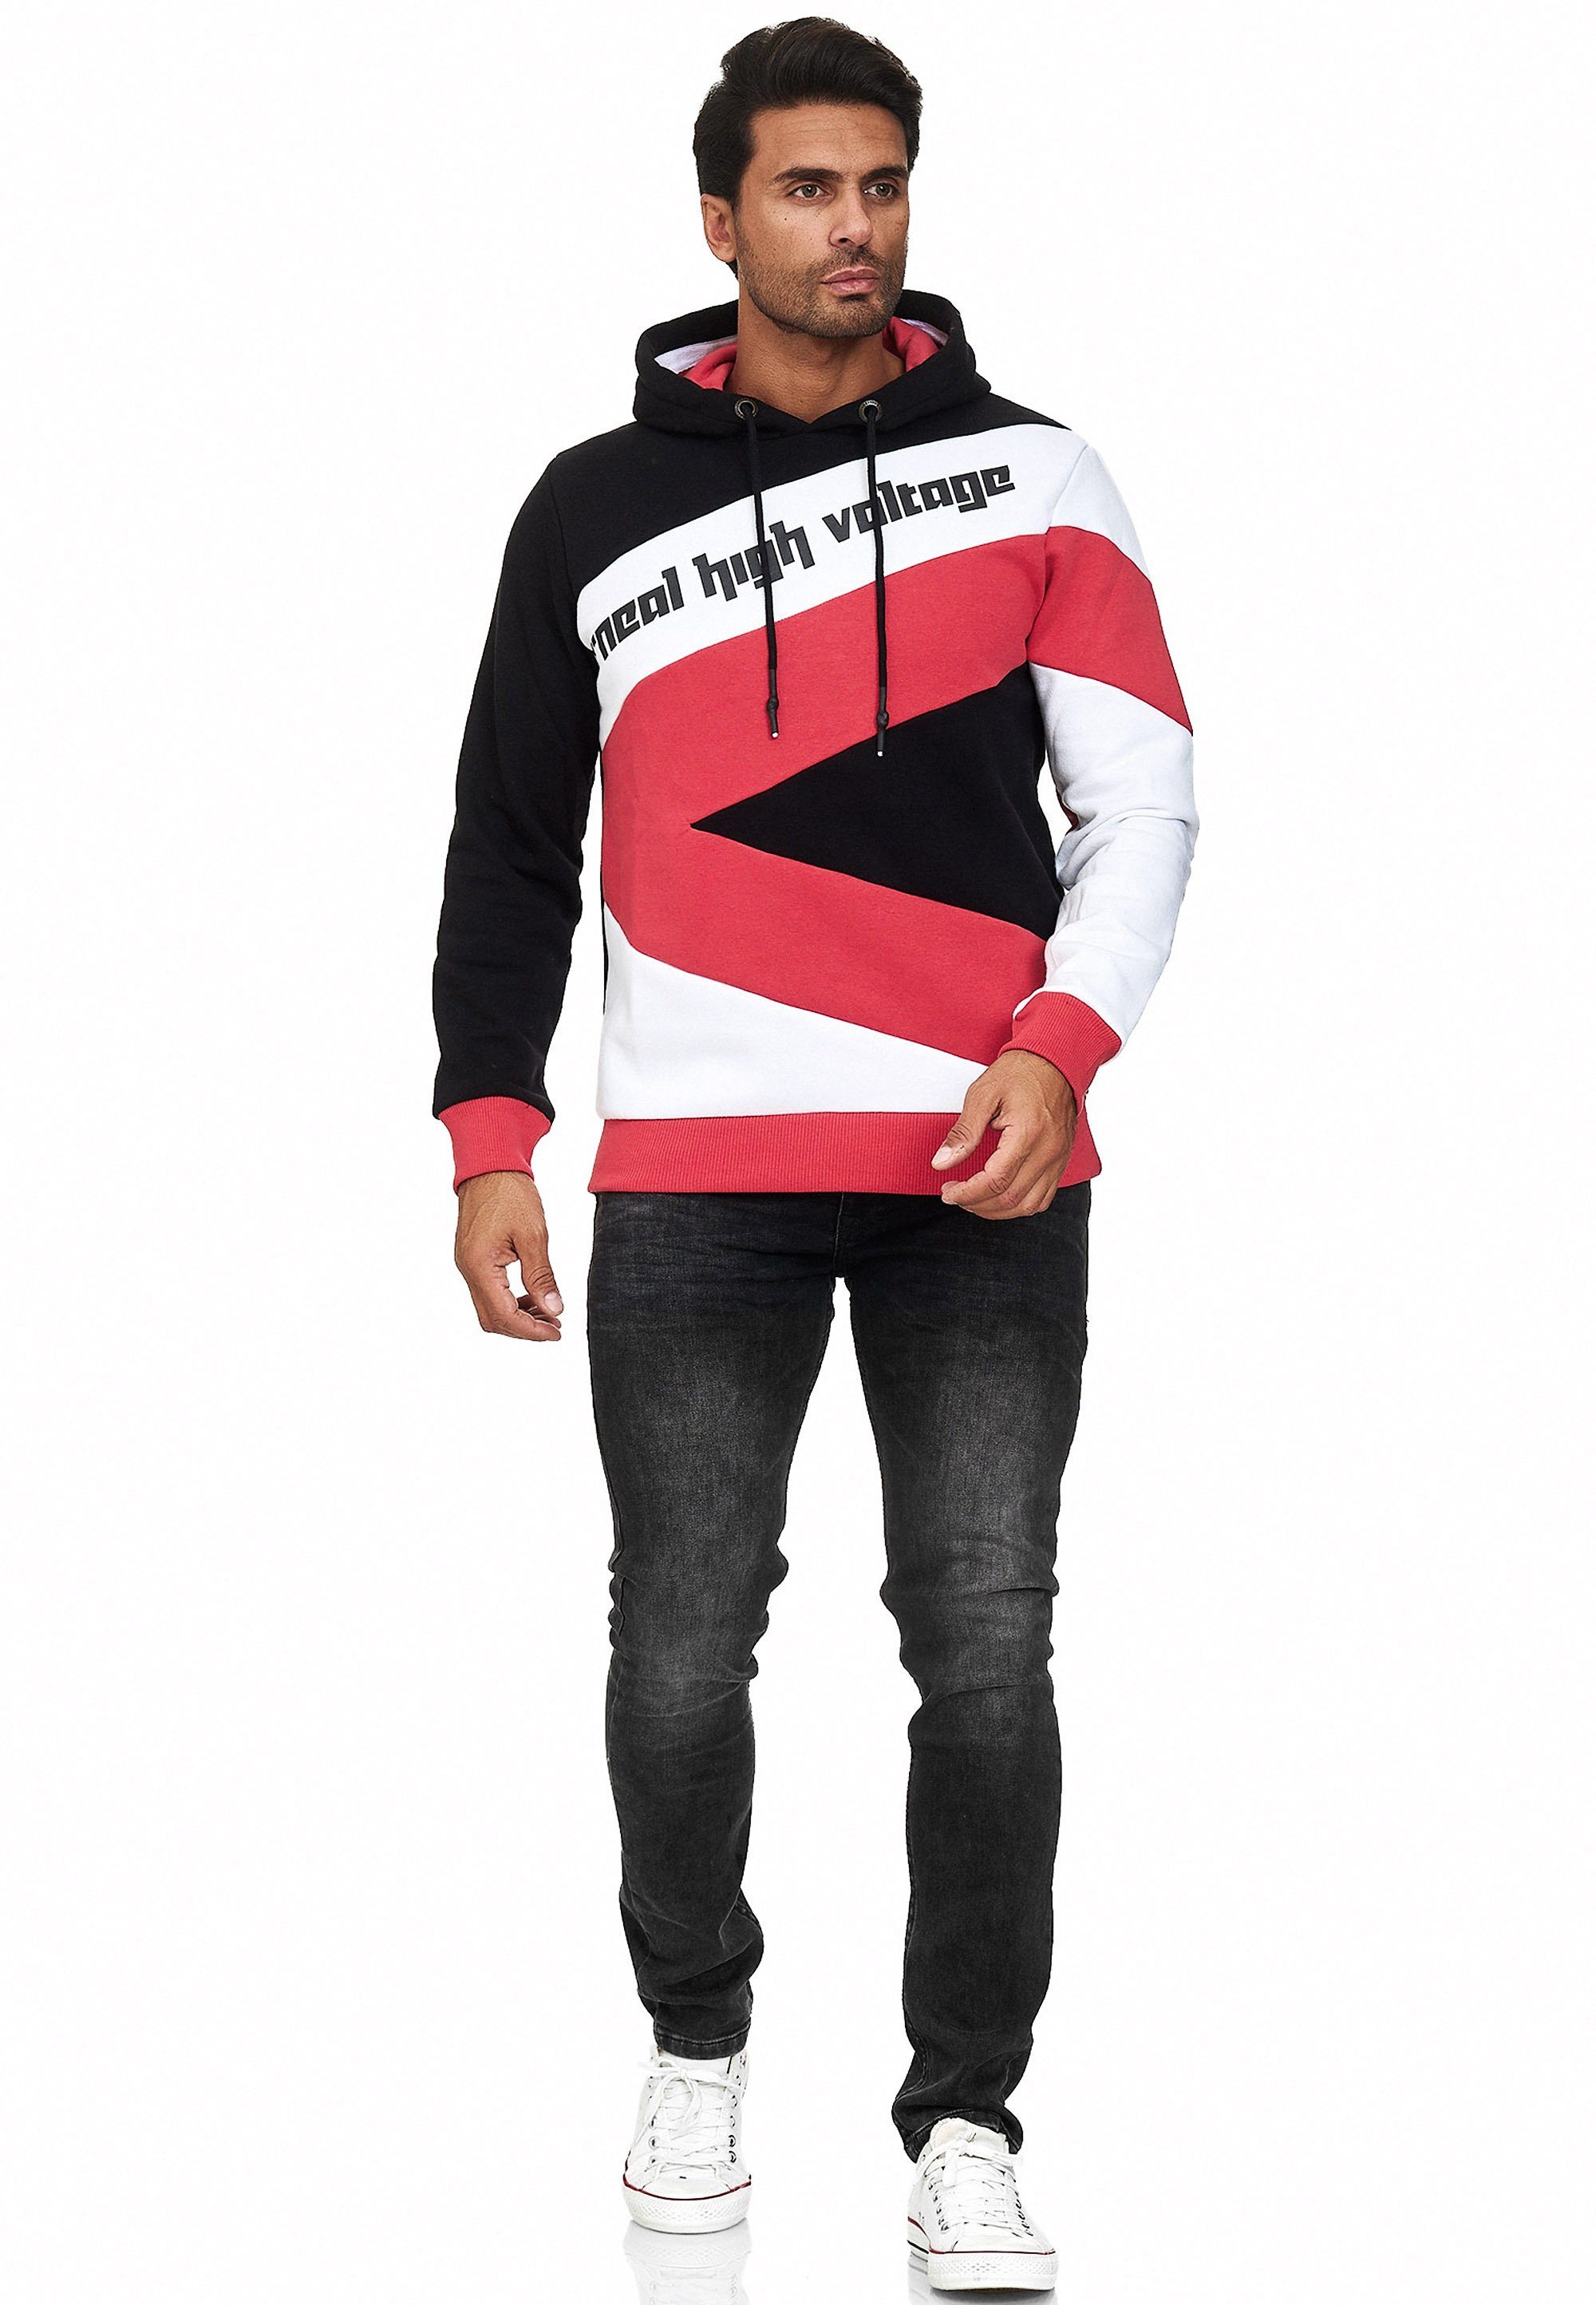 Neue Produkte im Versandhandel supergünstig! Rusty Neal Kapuzensweatshirt in sportlichem Design schwarz-rot